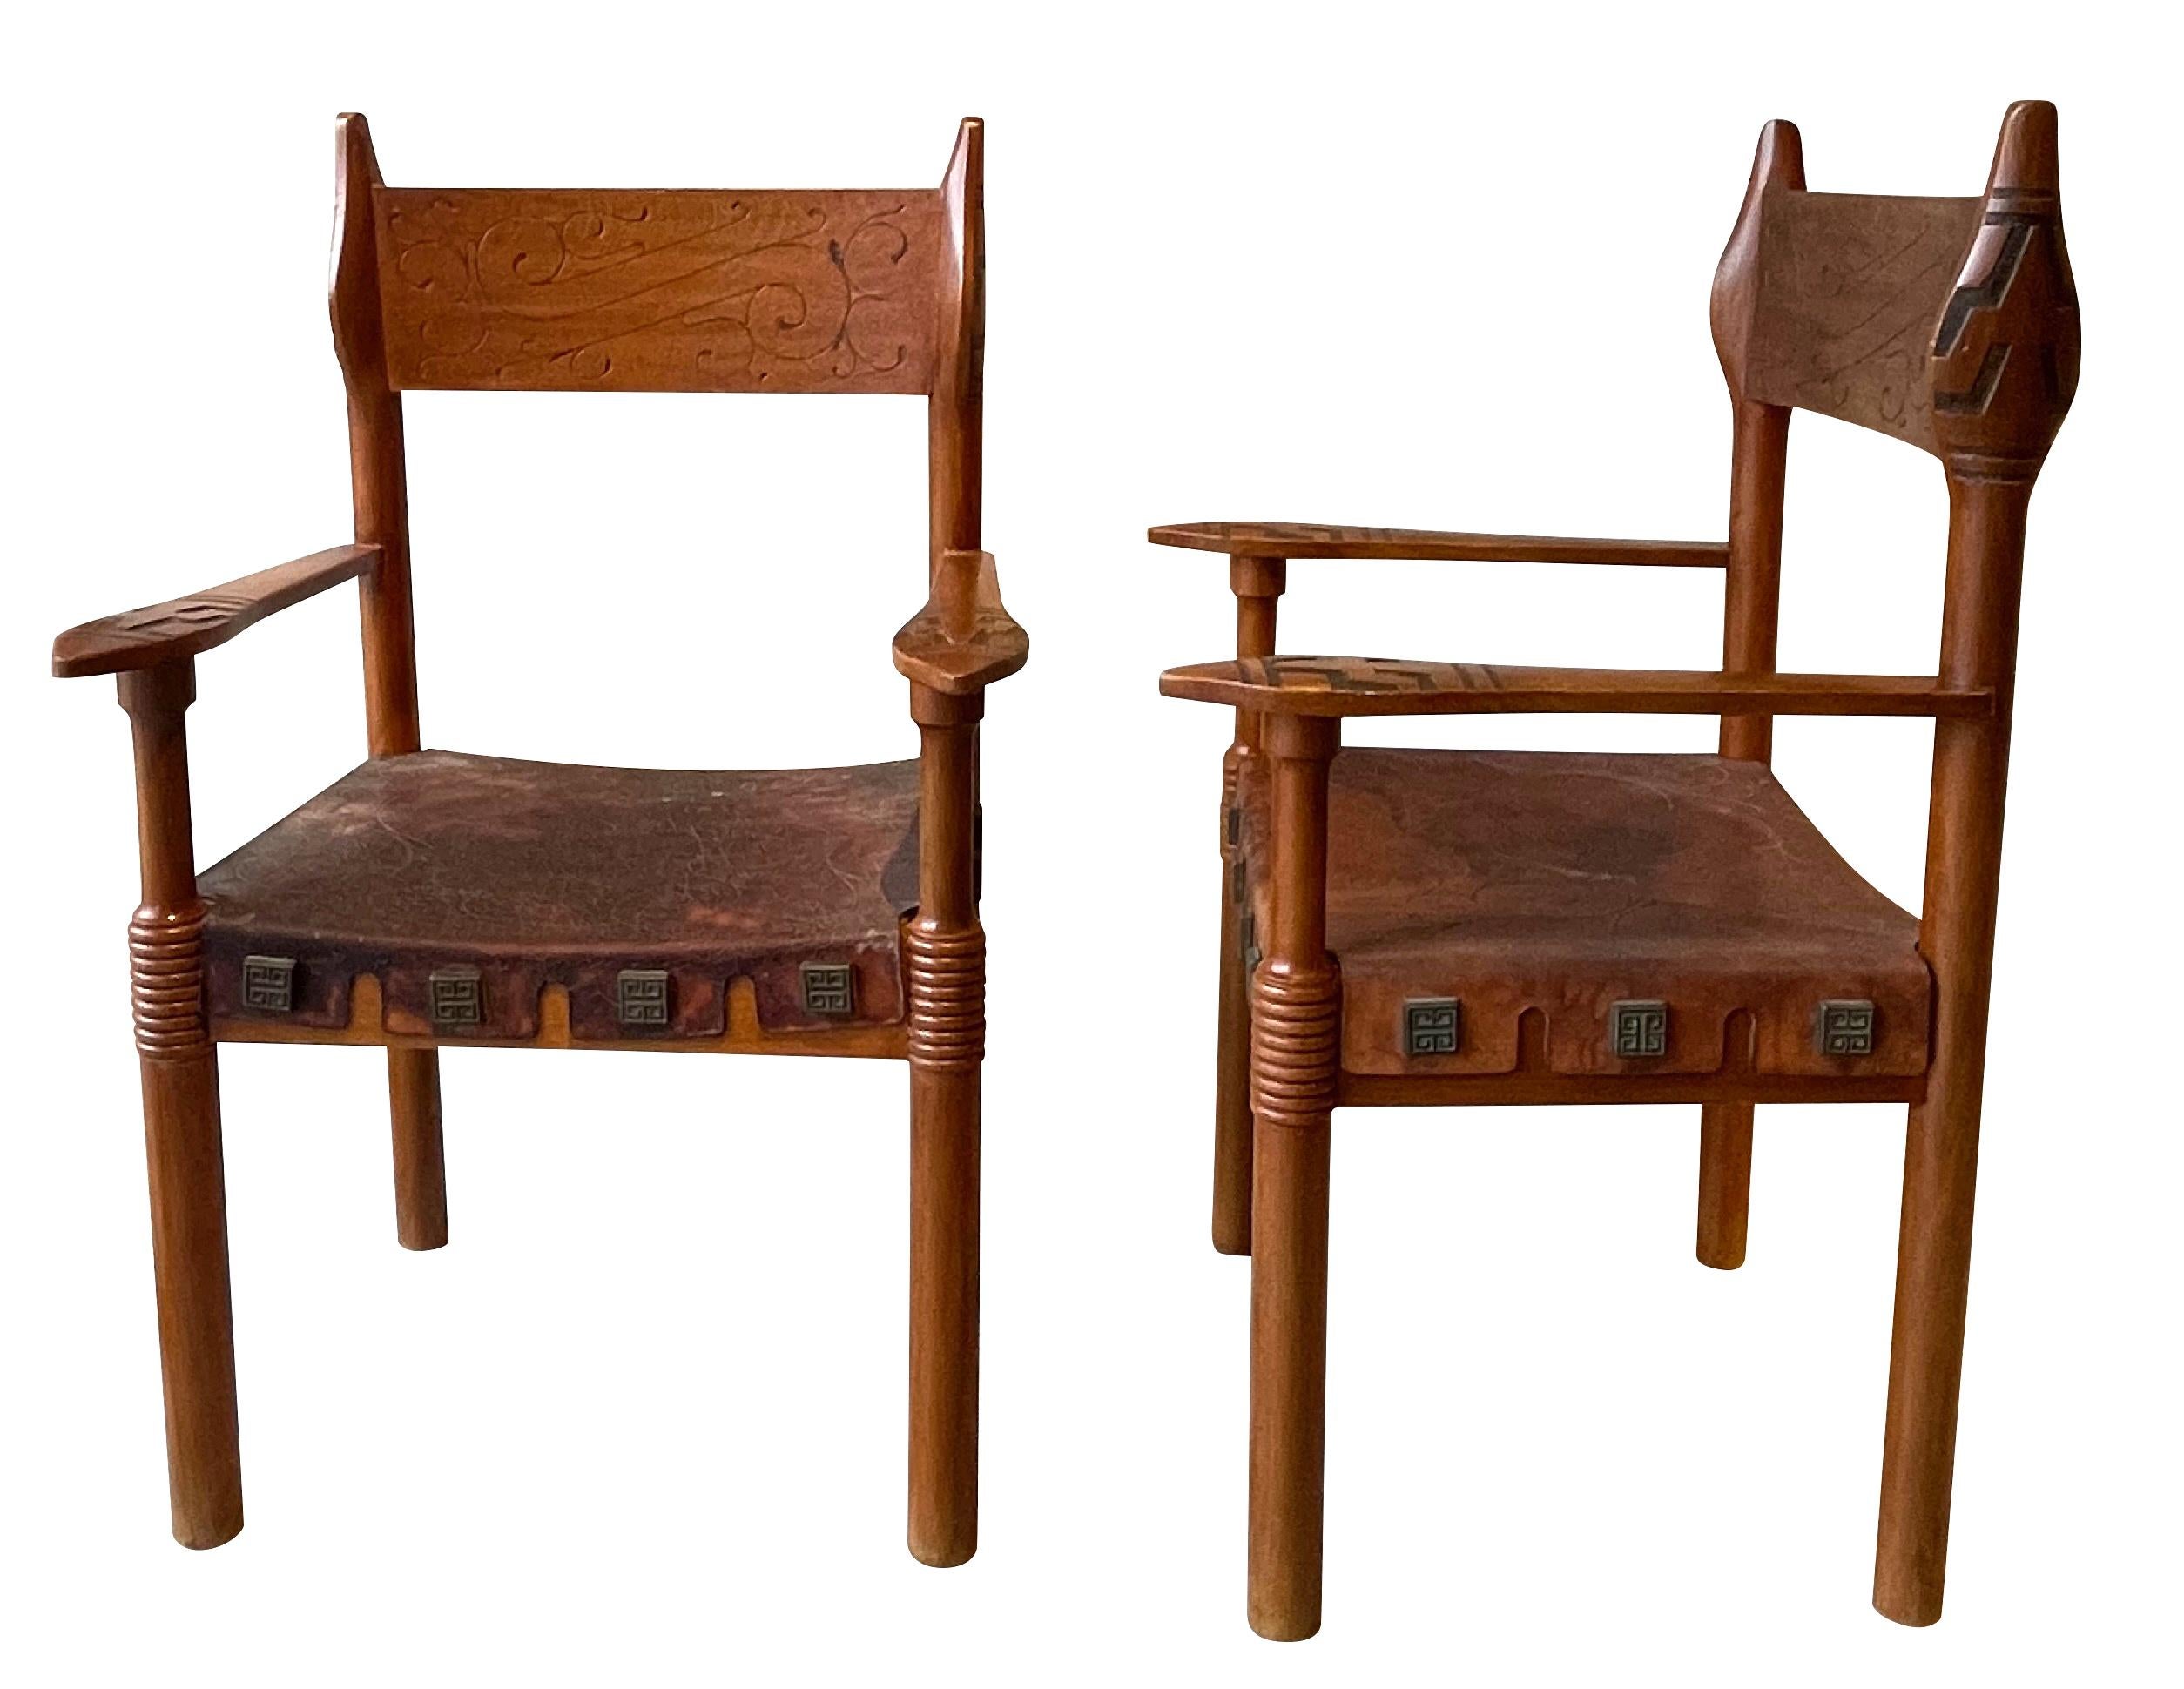 1970er Jahre Spanisch Paar Holzrahmen, geprägte Ledersitz Stühle.
Ungewöhnliche und sehr dekorative Schnitzereien an Armen und Seiten des Rahmens und der Rückseite.
Geprägte Ledersitze.
Gravierte Bronzenieten, mit denen das Leder am Rahmen der